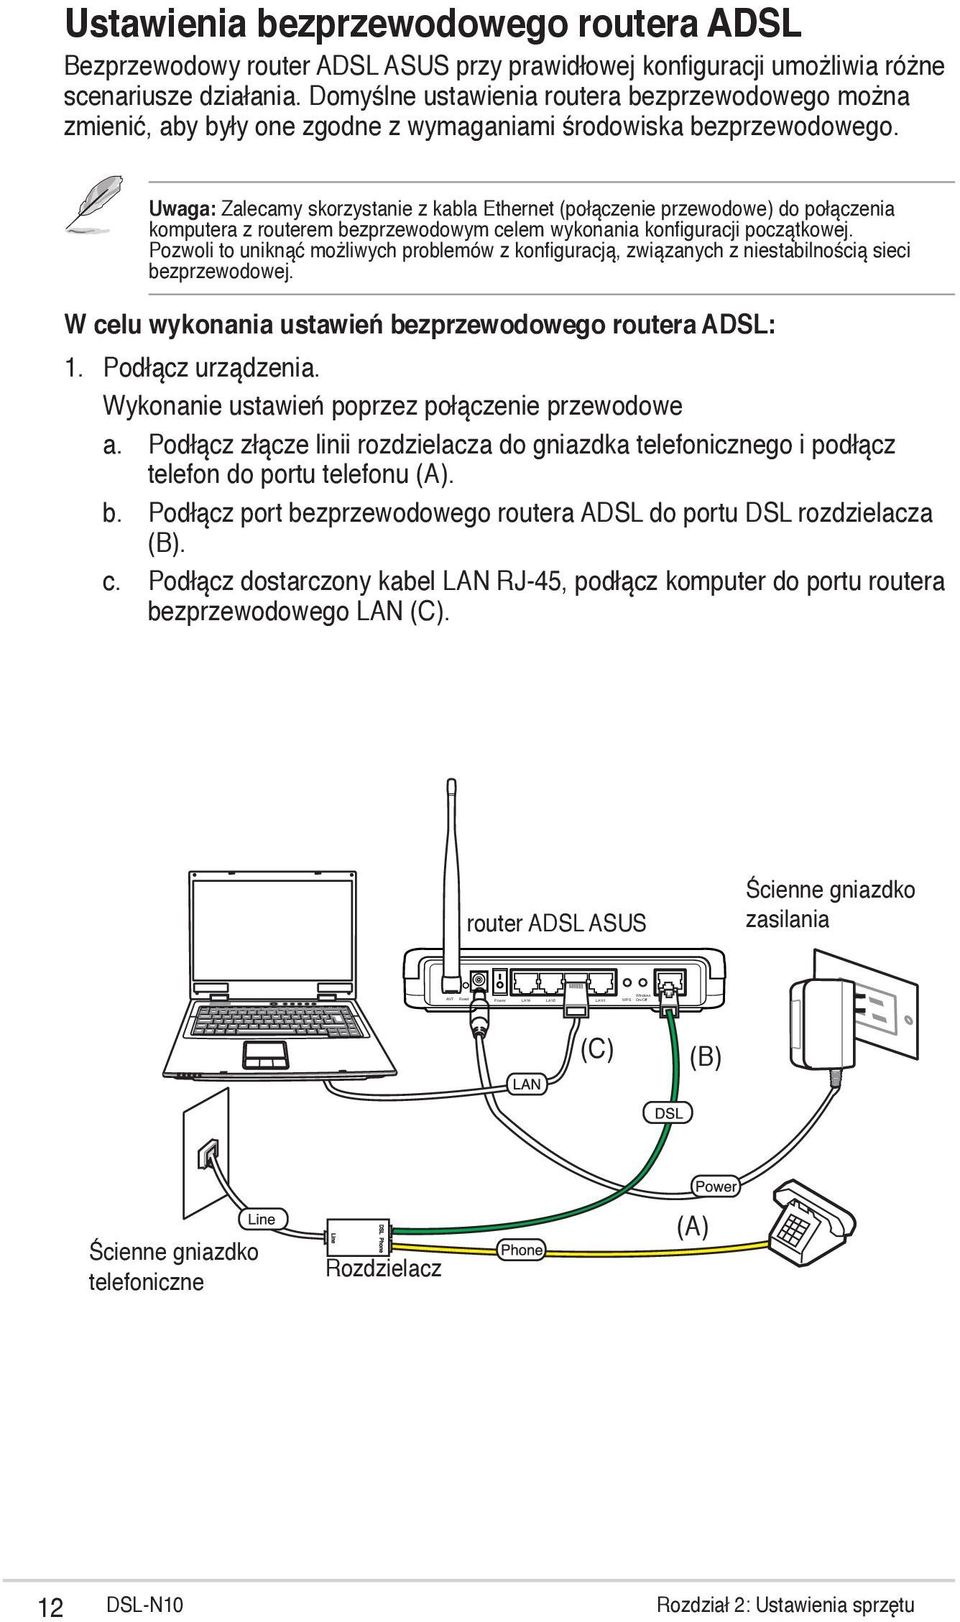 Uwaga: Zalecamy skorzystanie z kabla Ethernet (połączenie przewodowe) do połączenia komputera z routerem bezprzewodowym celem wykonania konfiguracji początkowej.